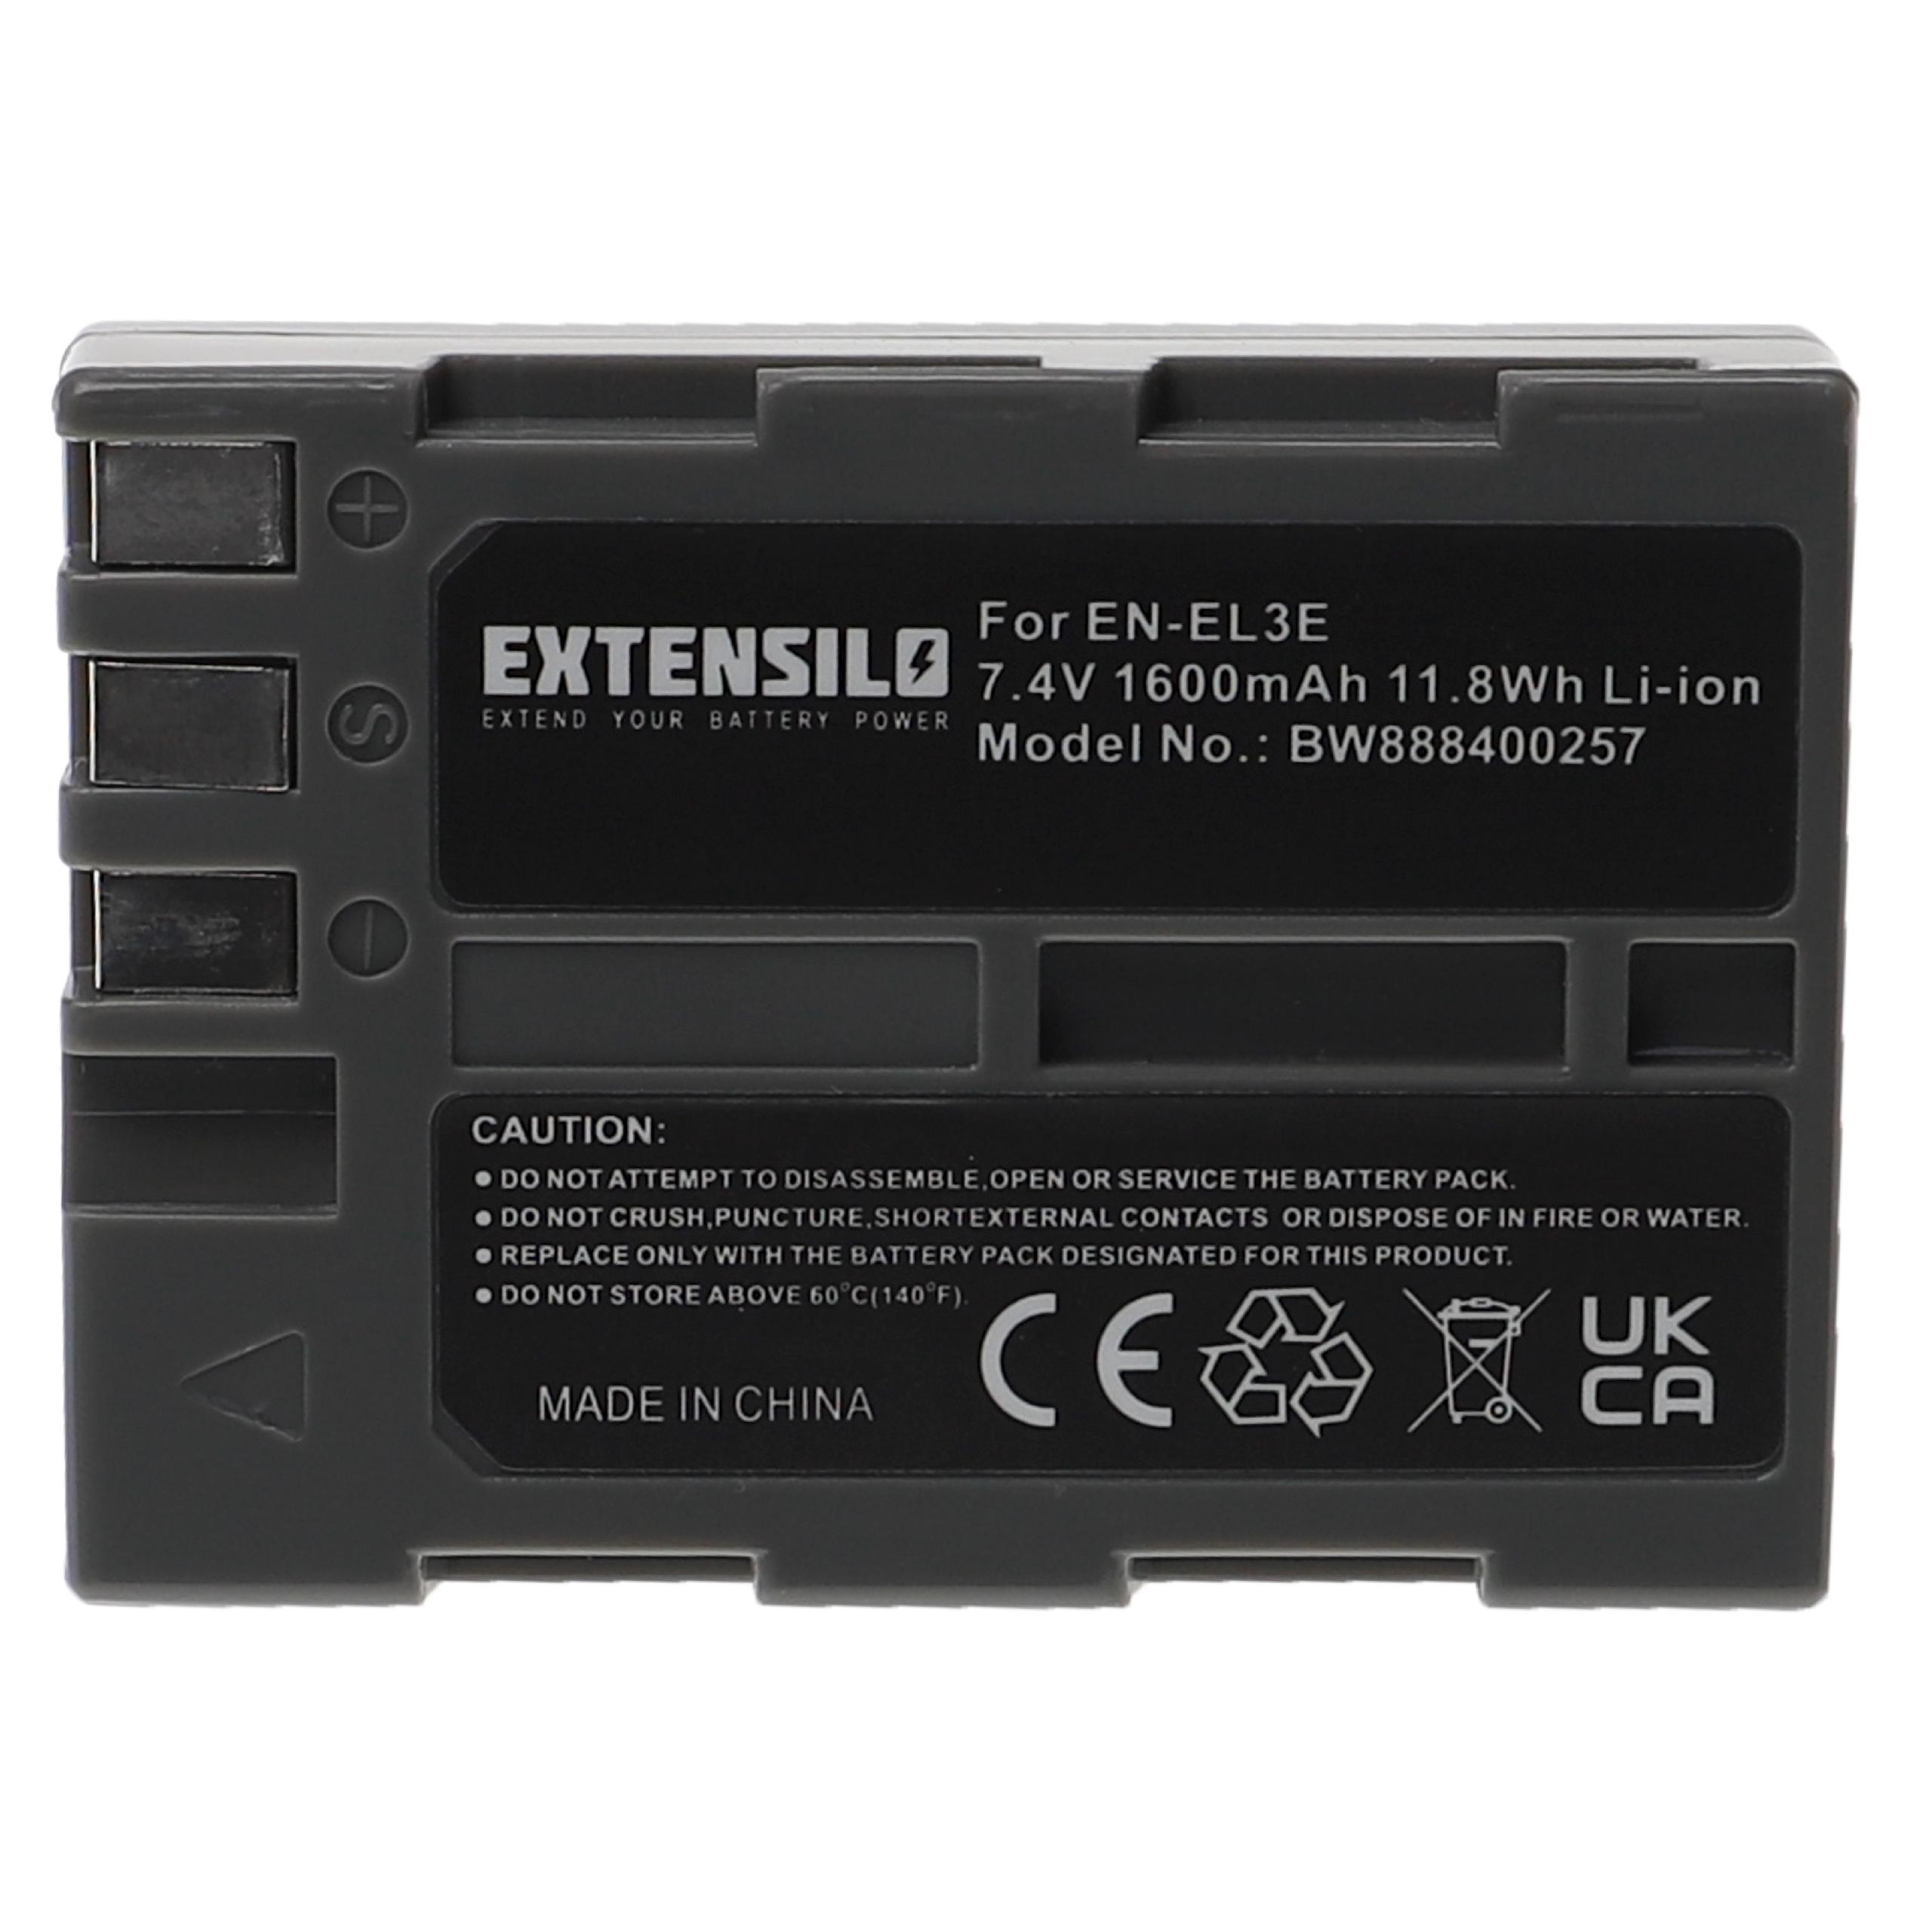 Batterie remplace Nikon EN-EL3e pour appareil photo - 1600mAh 7,4V Li-ion